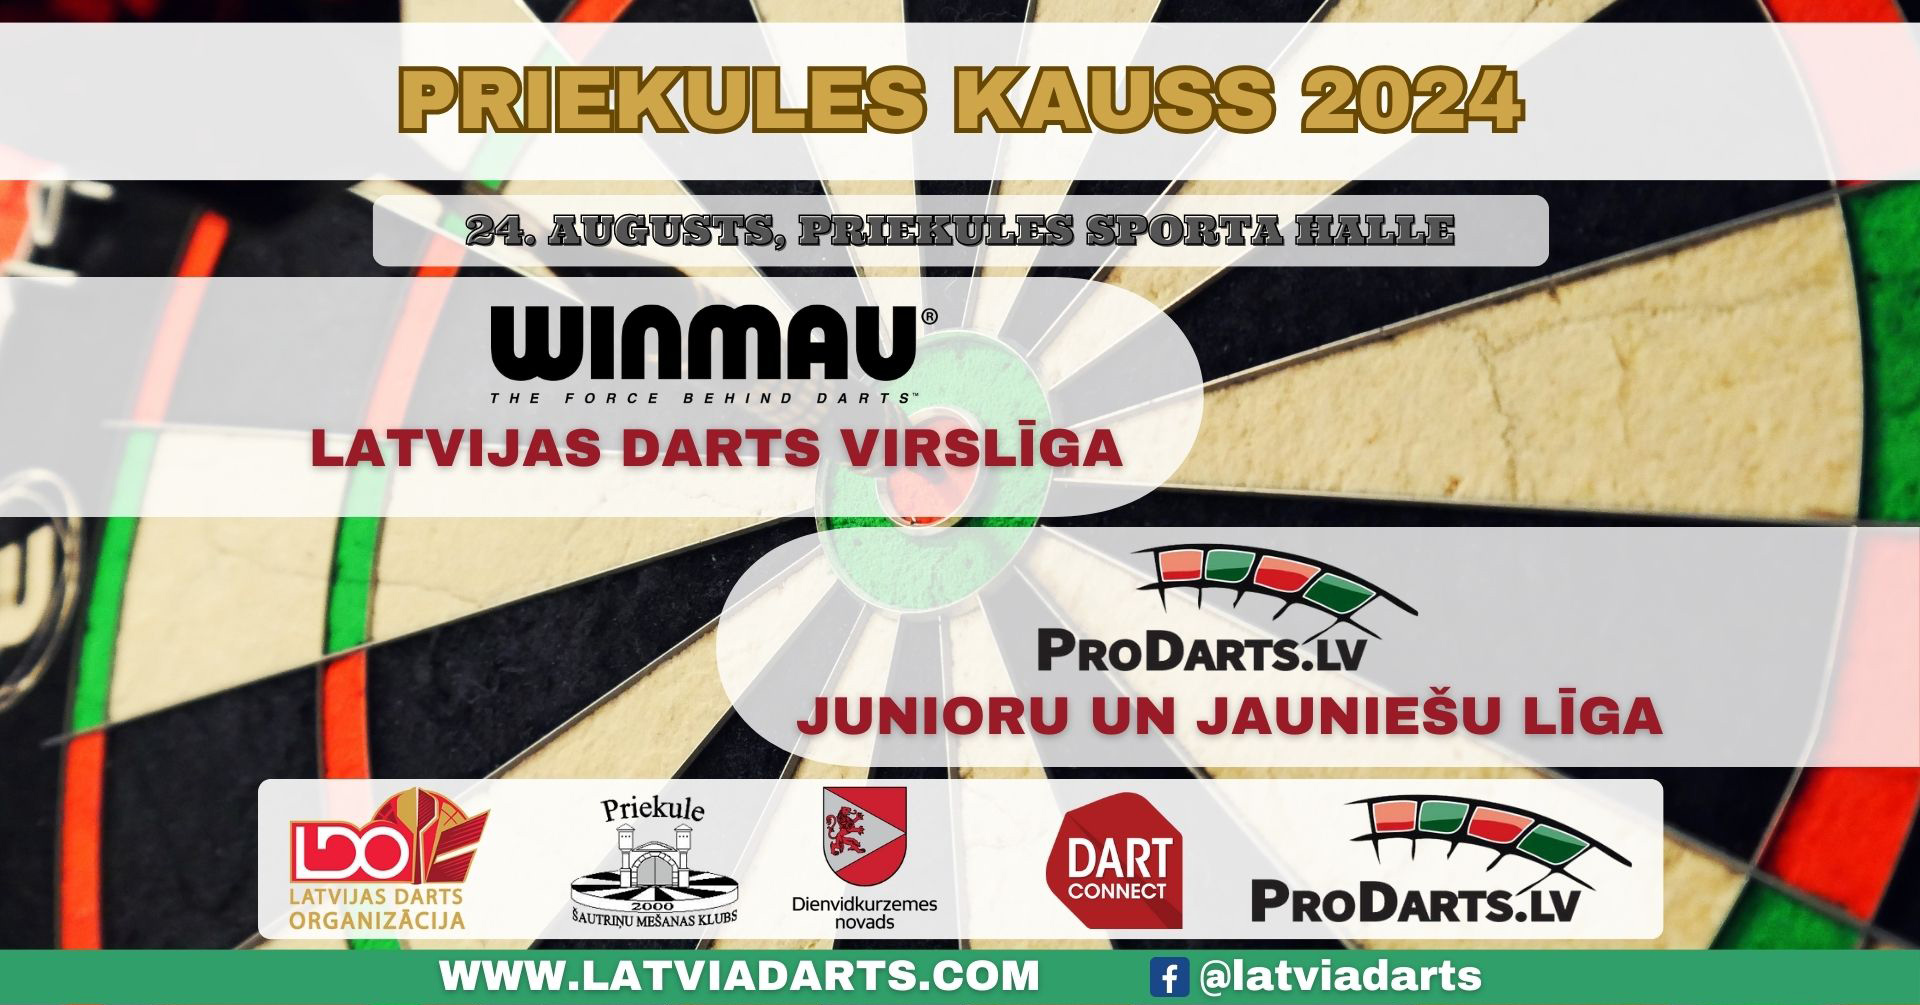 Priekules-kauss-2024